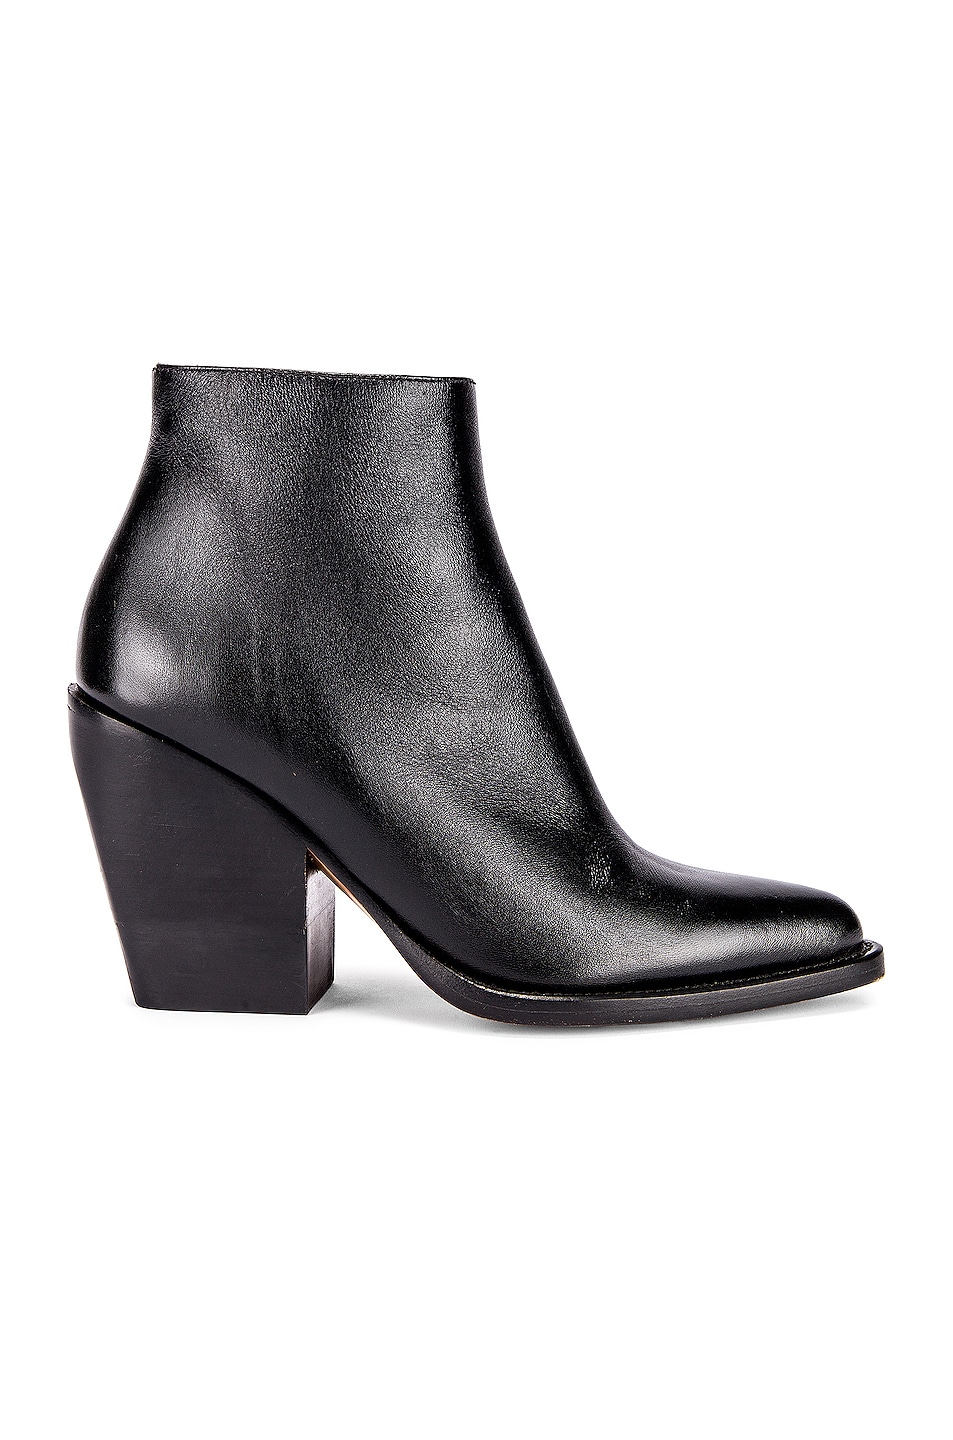 Chloe Rylee Ankle Boots in Black | FWRD